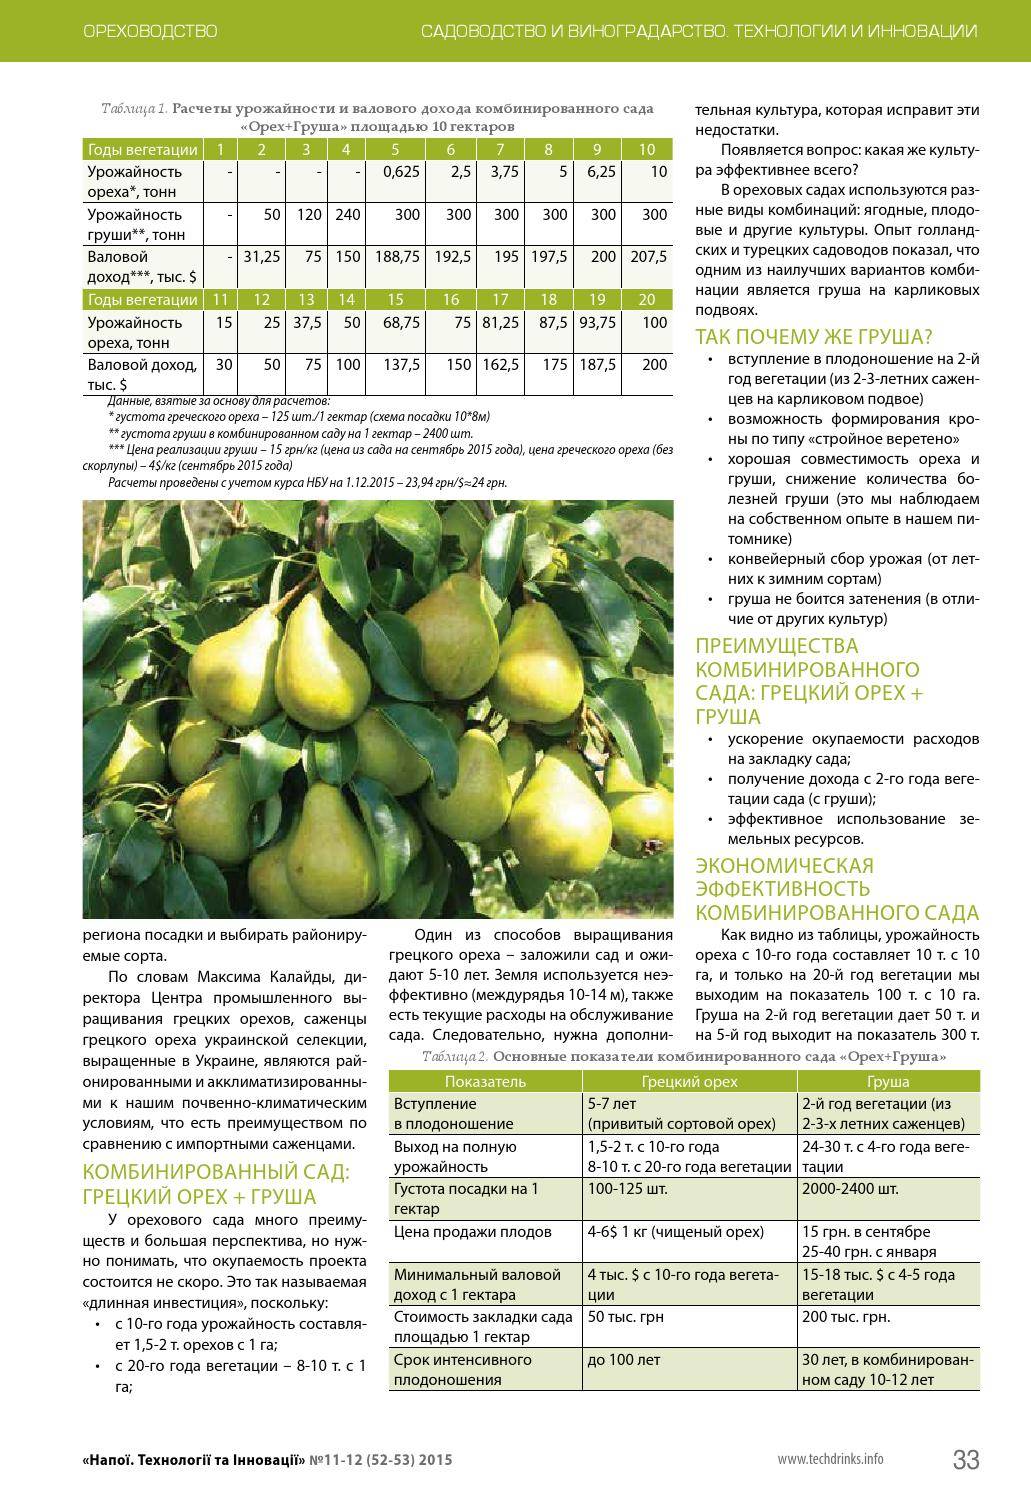 Груша белорусская поздняя: описание и характеристики сорта, опылители, технология выращивания